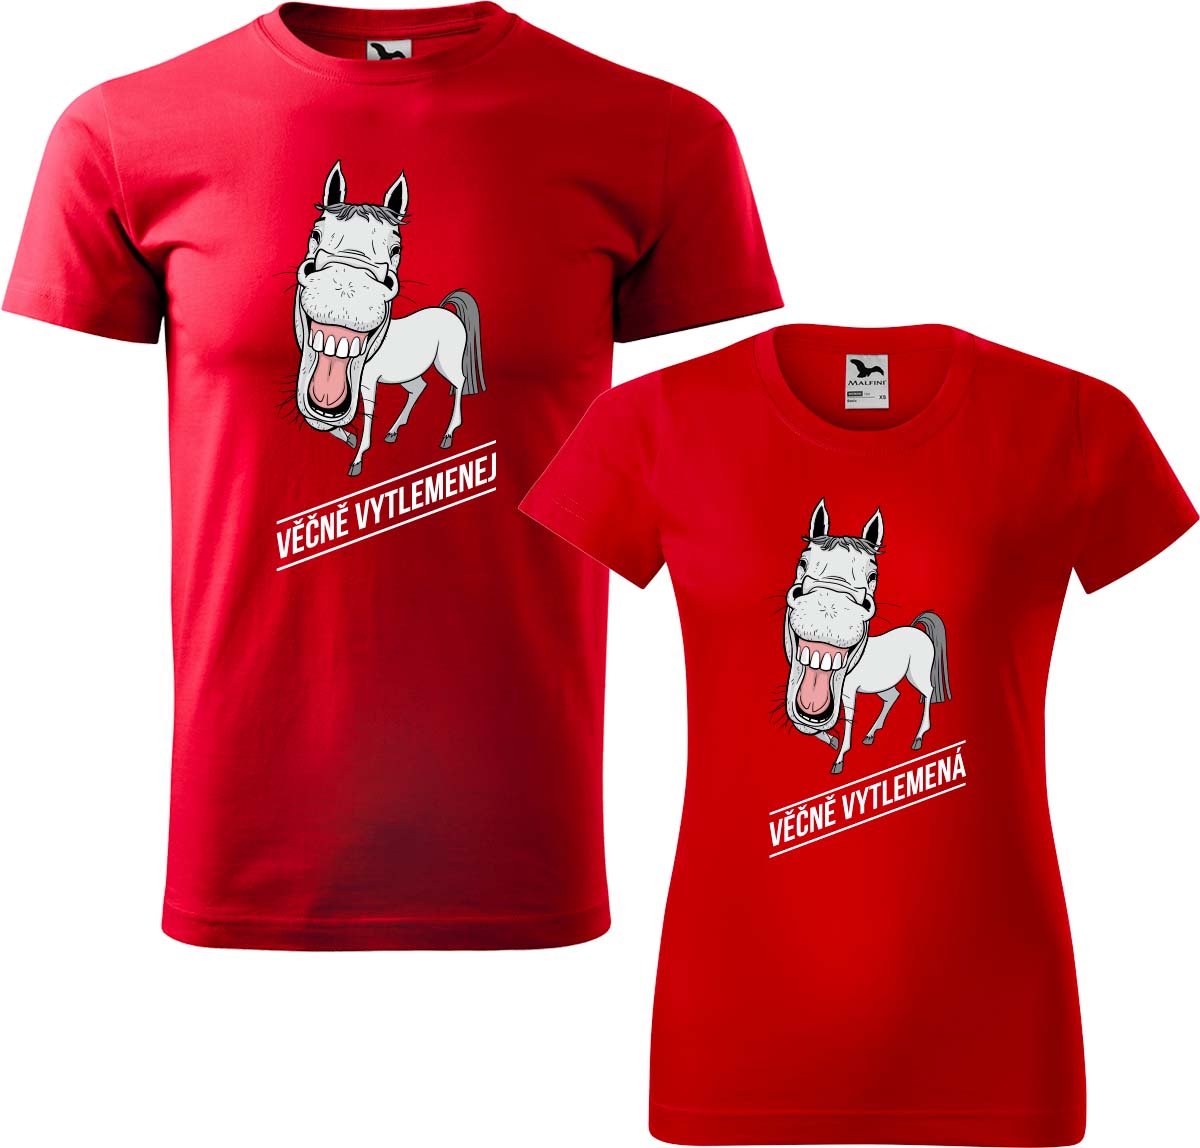 Trička pro páry - Věčně vytlemenej a věčně vytlemená Barva: Červená (07), Velikost dámské tričko: L, Velikost pánské tričko: 3XL